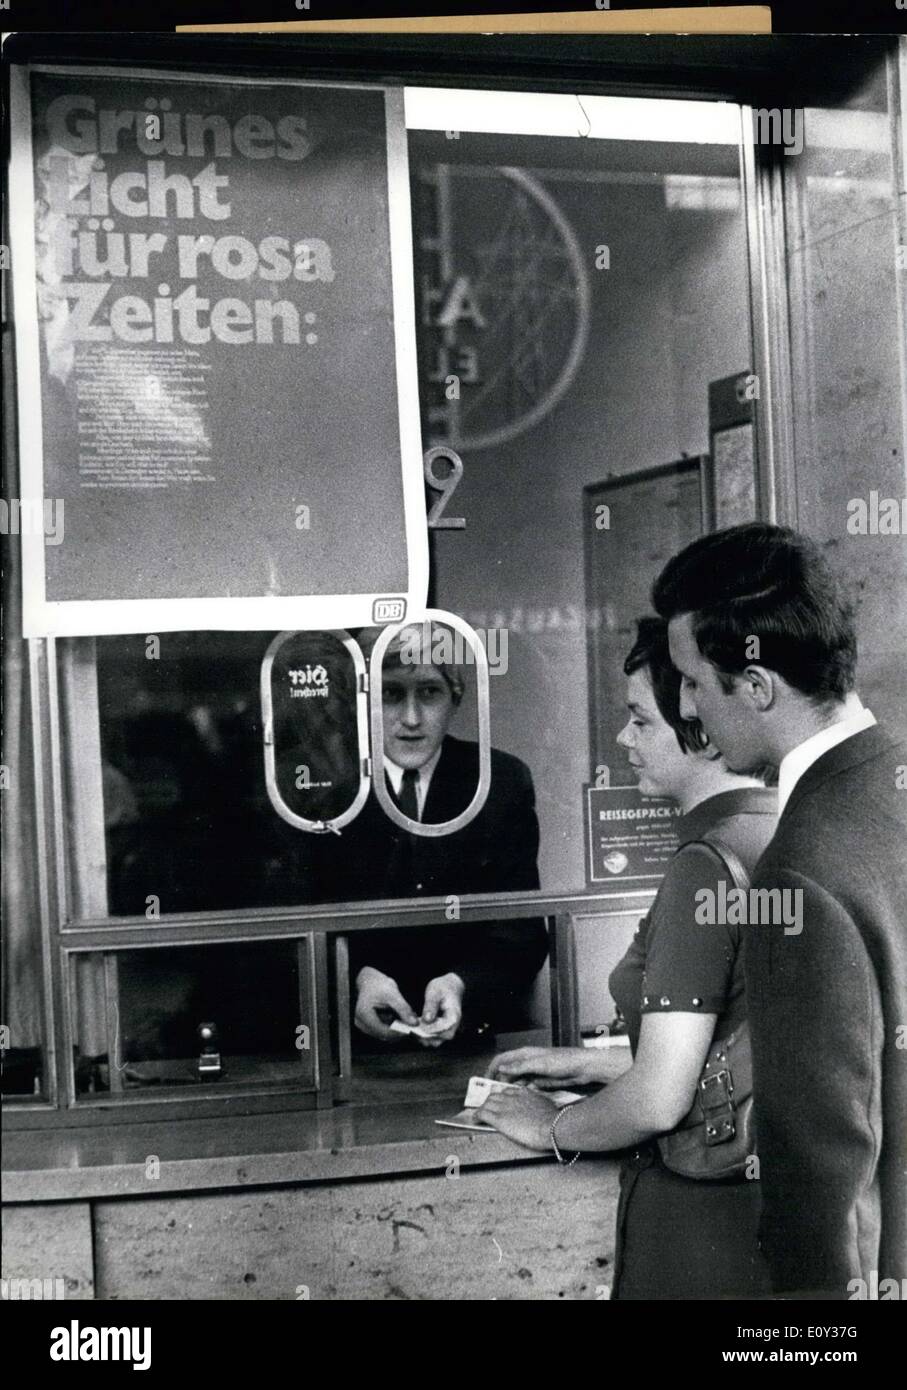 Sept. 14, 1968 - die Deutsche Bundesbahn gab Sie ein Ticket für zwei Passagiere unter dem Namen '' Gruenes Licht Fuer Rosa Reisen. " Das Ticket wird für ein paar Leute arbeiten und hilft die Bahn Kosten kürzen. Dies funktioniert aber nicht nur für Paare. Vater und Tochter, Bruder und Schwester und viele andere kommen für das Ticket. Stockfoto